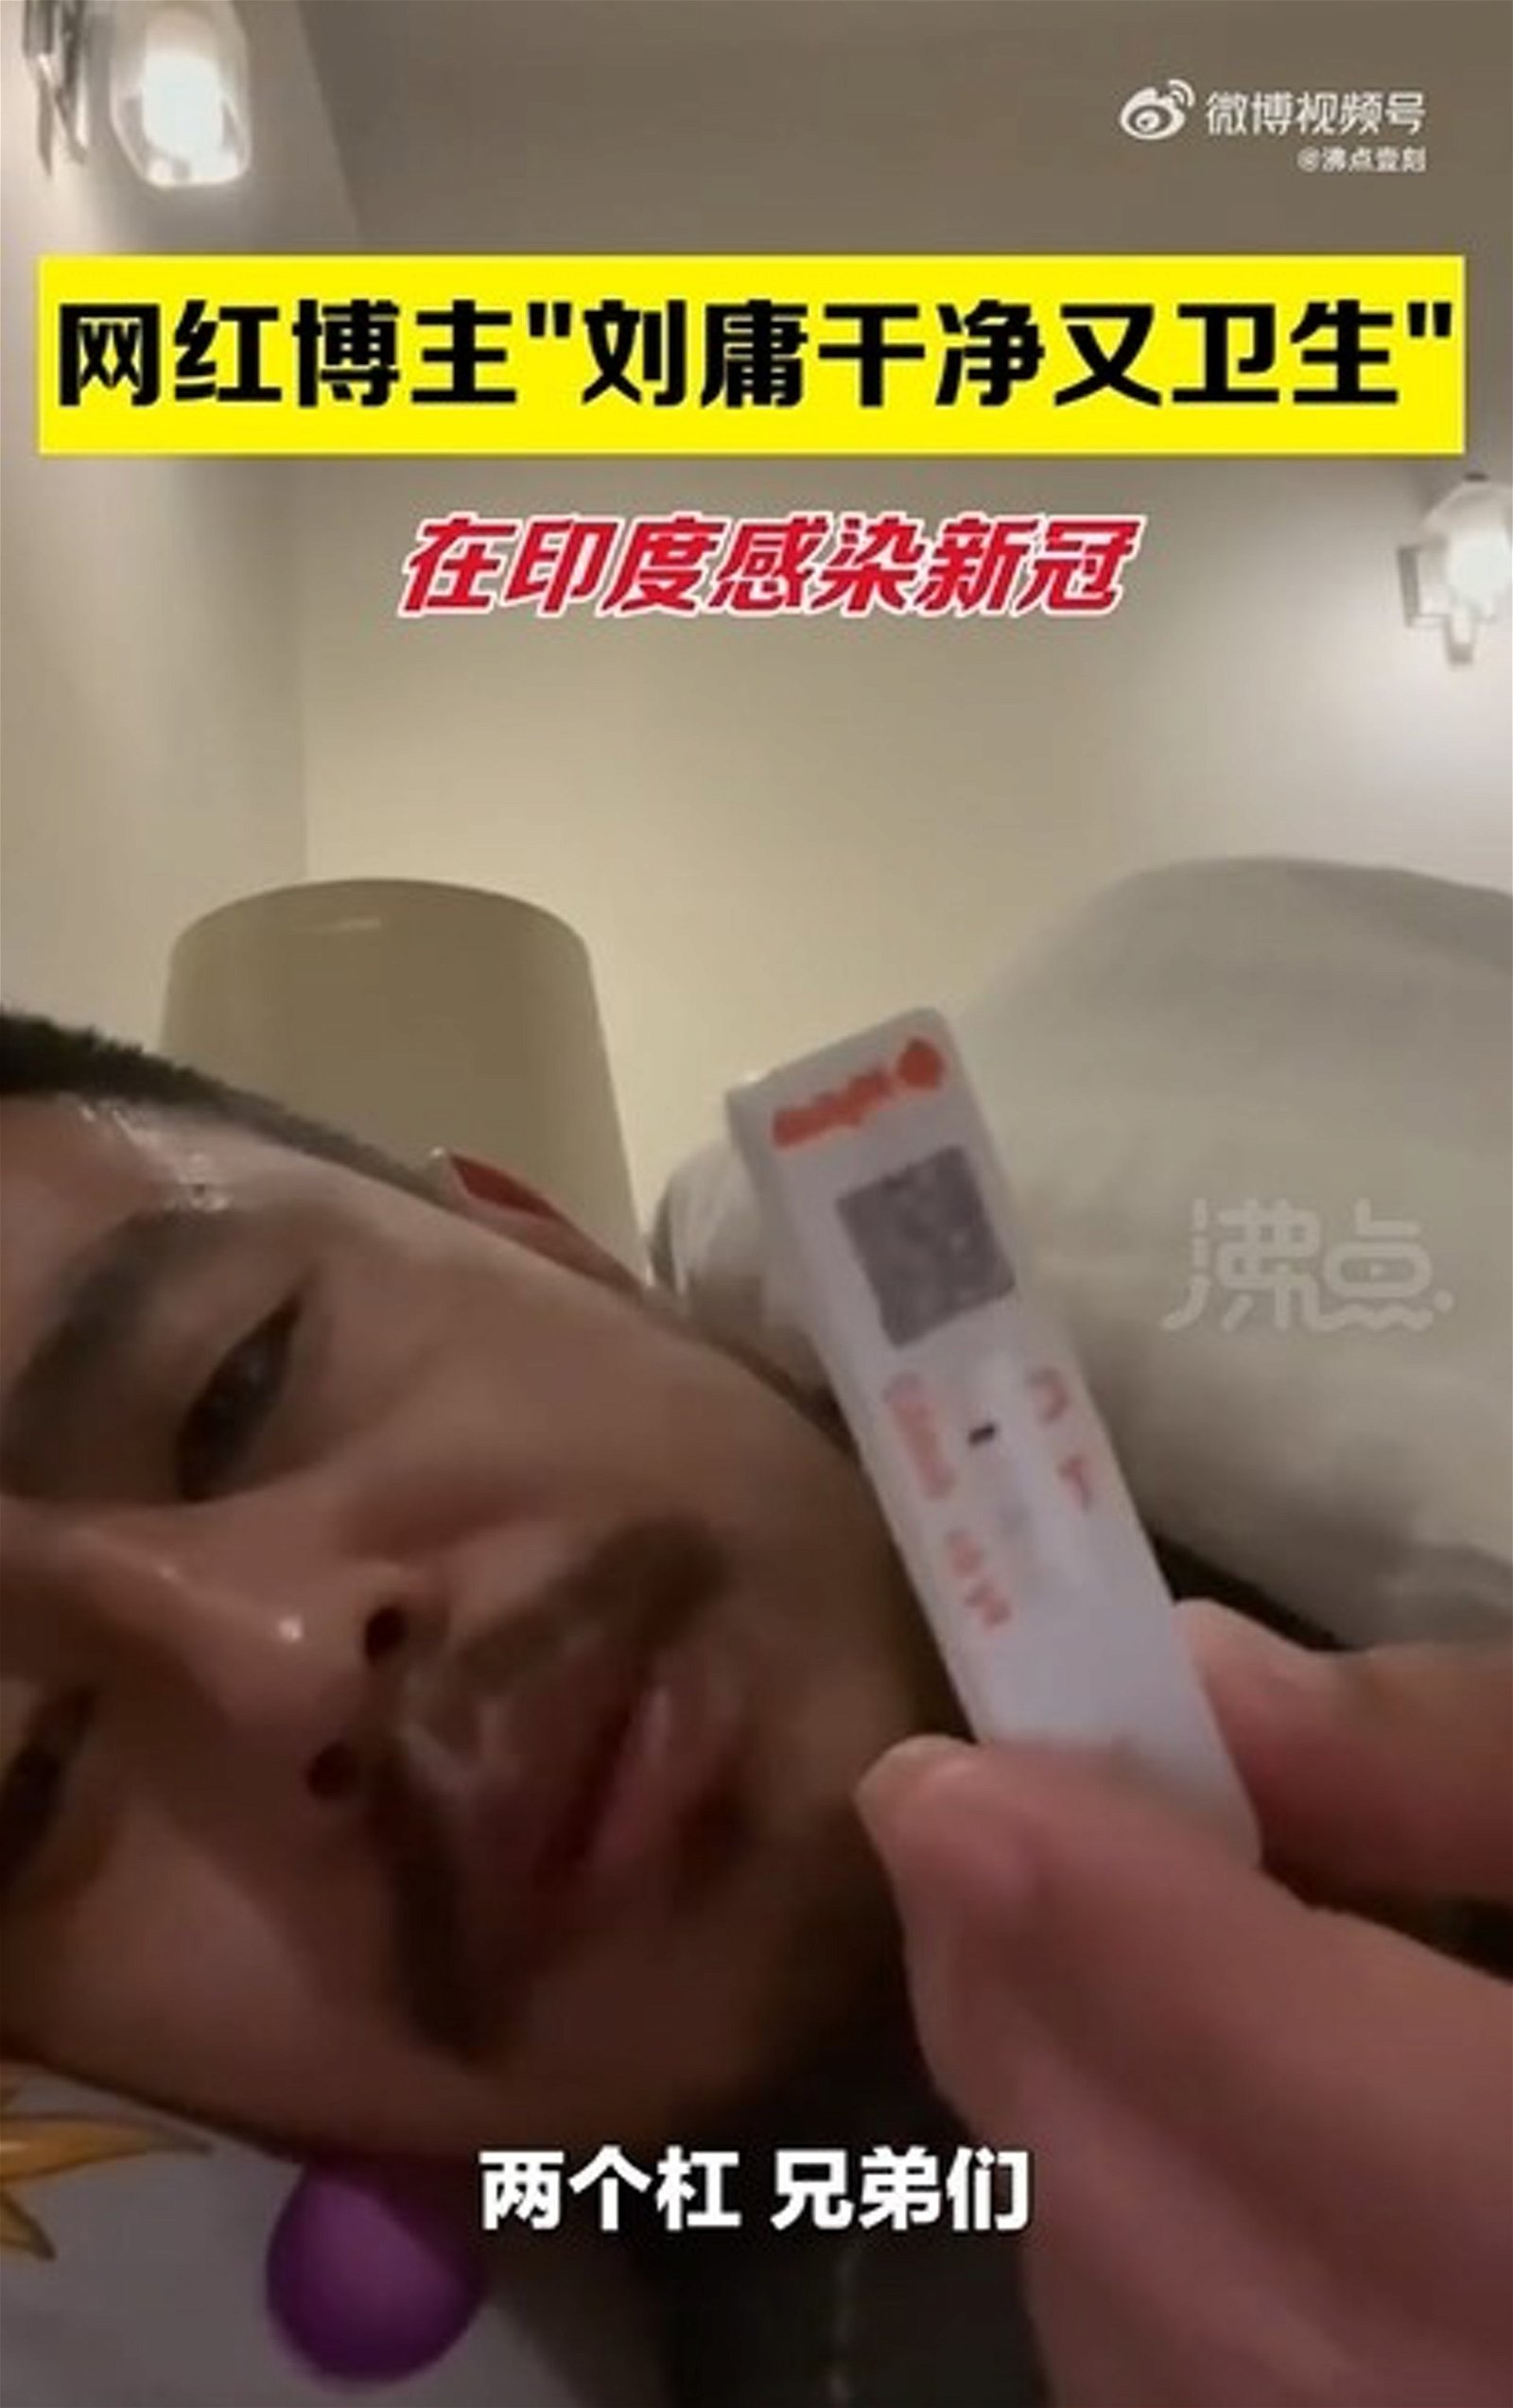 网红刘庸宣布自己确诊新冠肺炎。